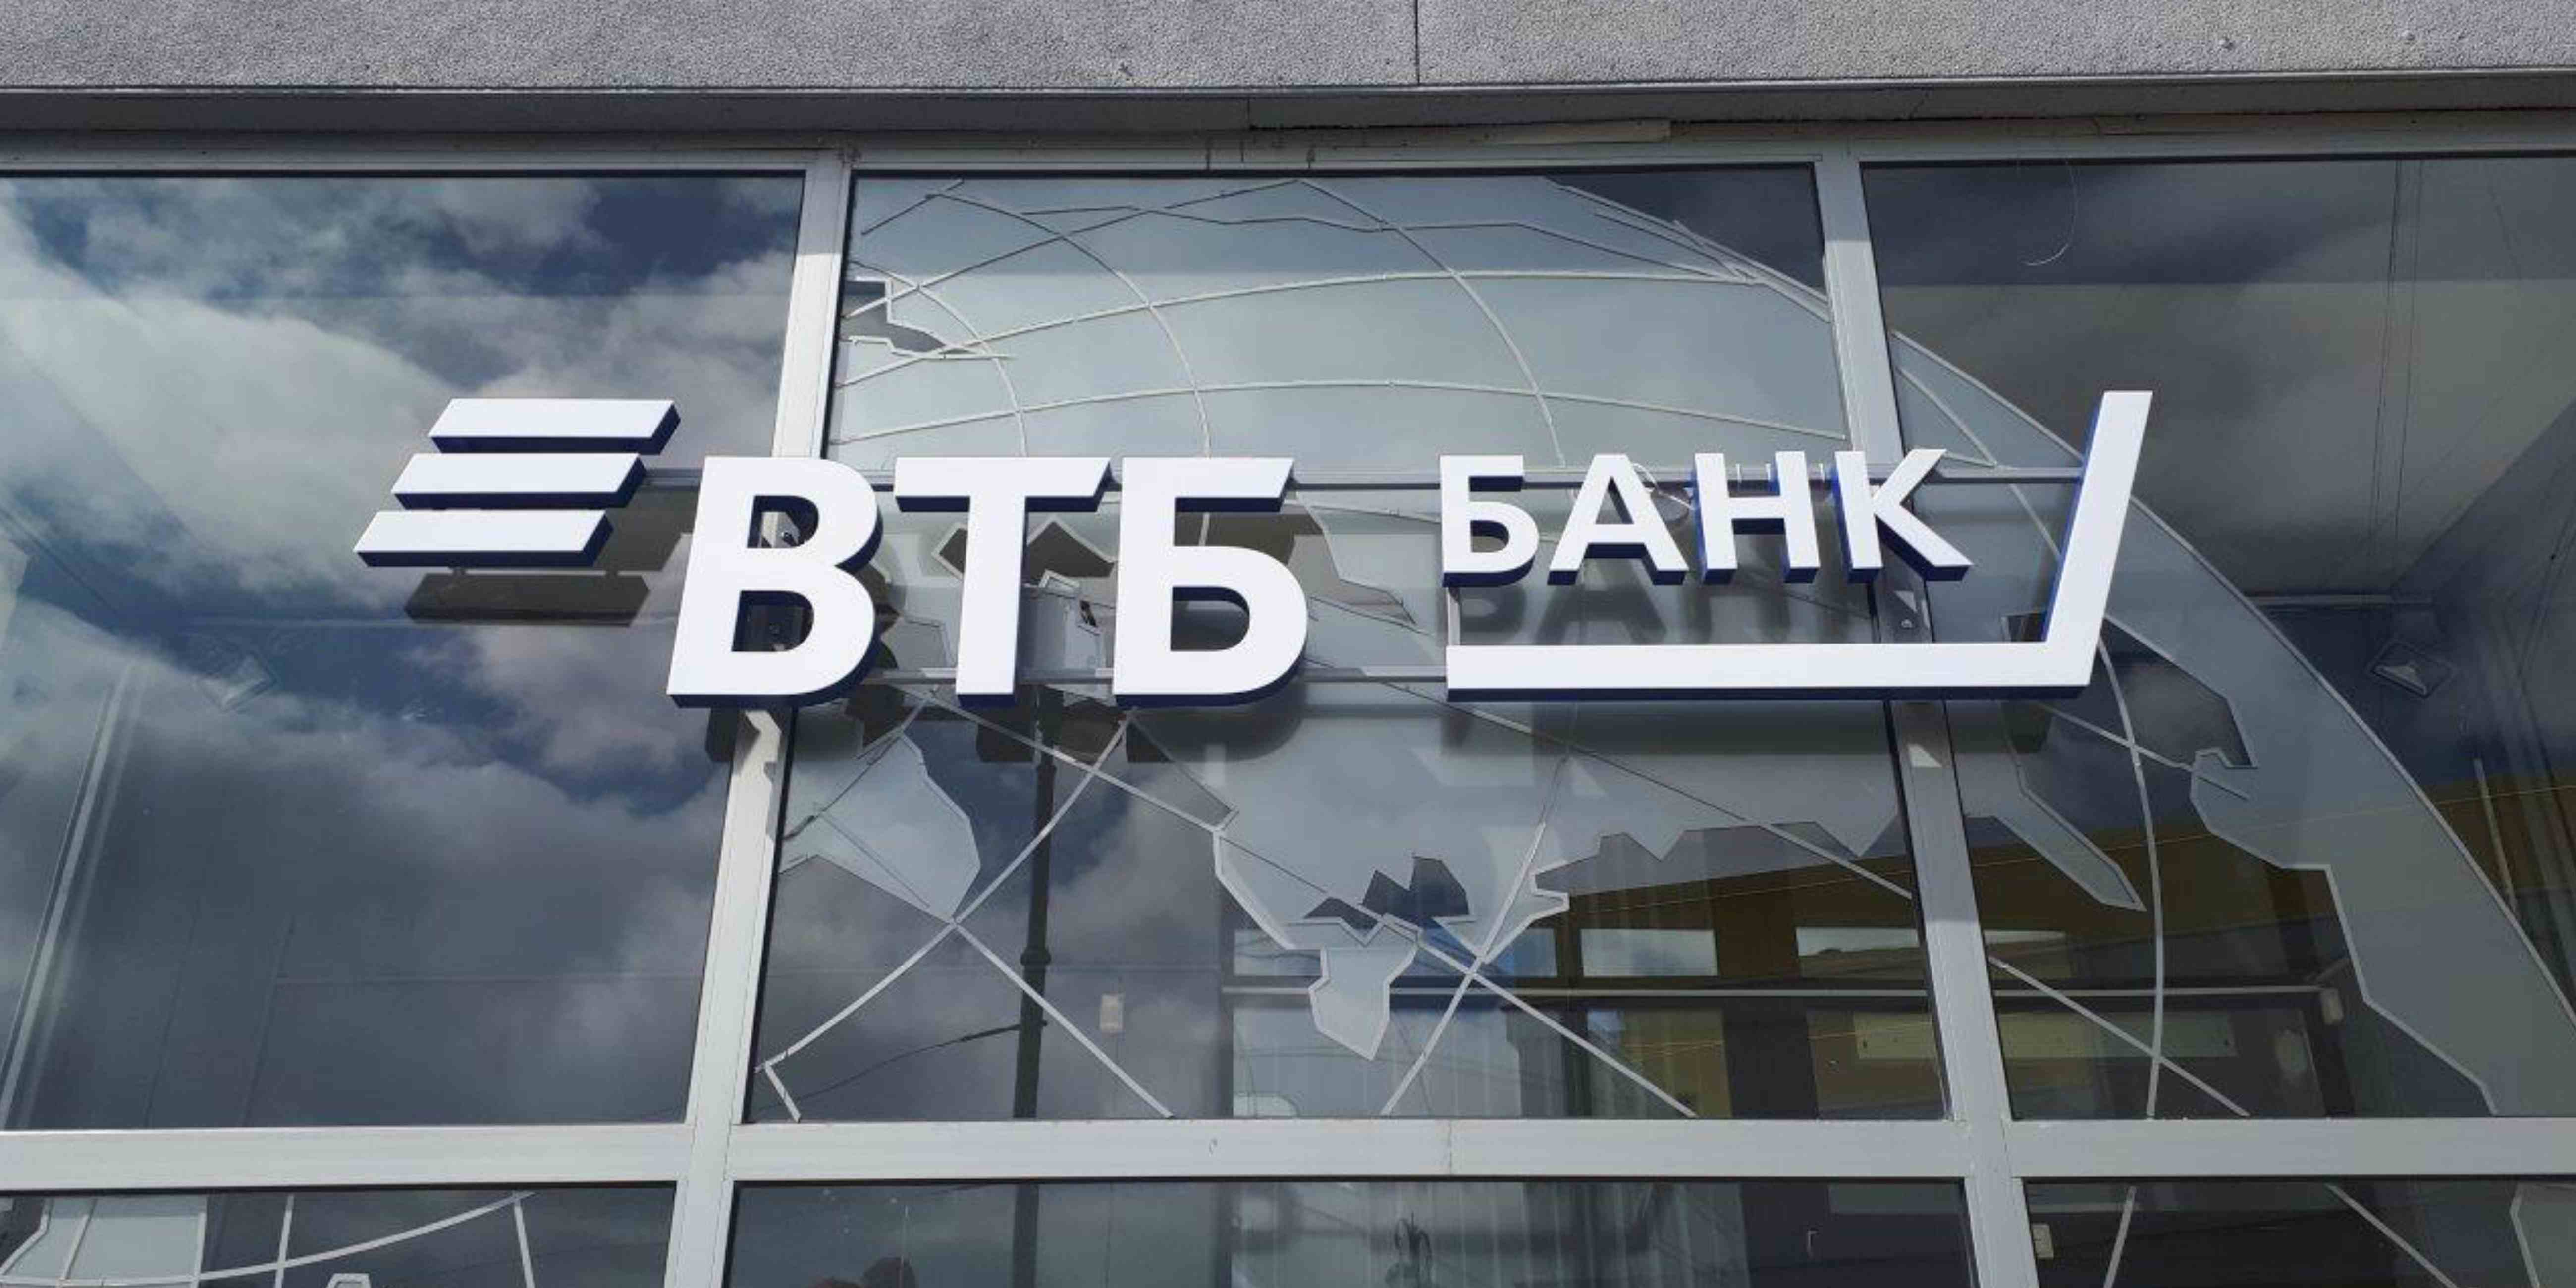 ВТБ в Нижегородской области продолжает турнир для data science-специалистов